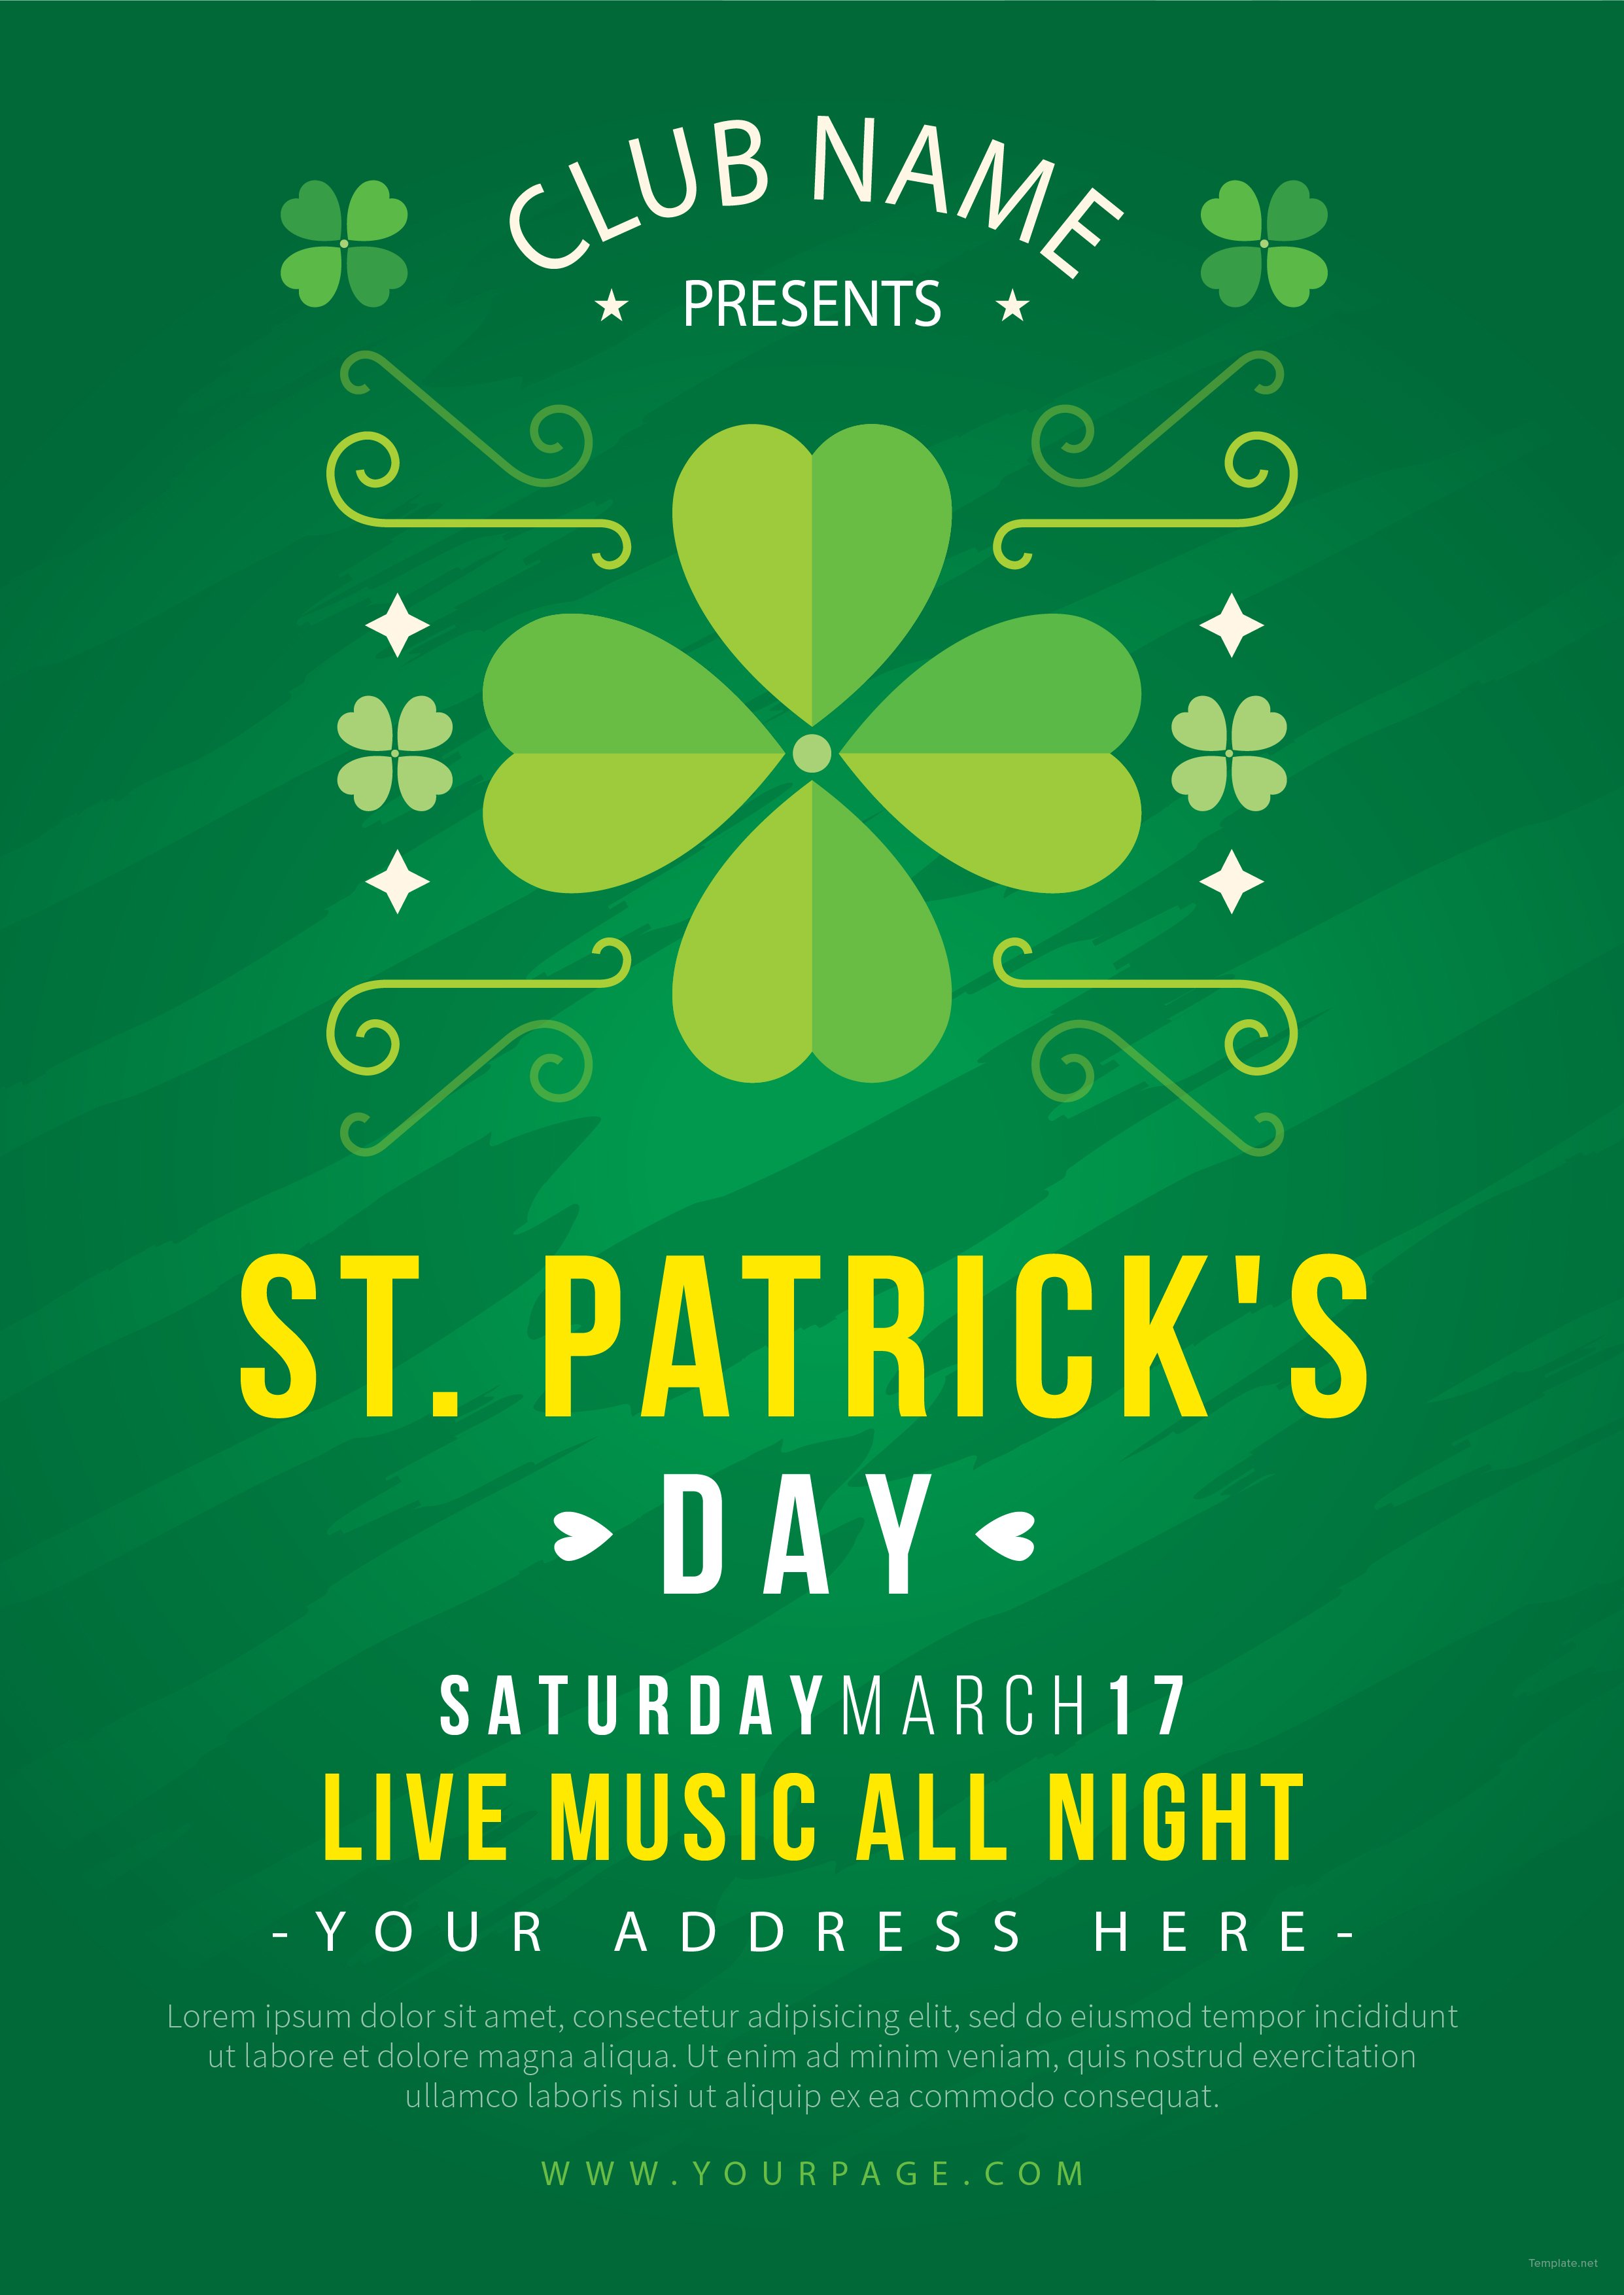 Free St Patrick's Day Celebration Flyer Template in Adobe Illustrator